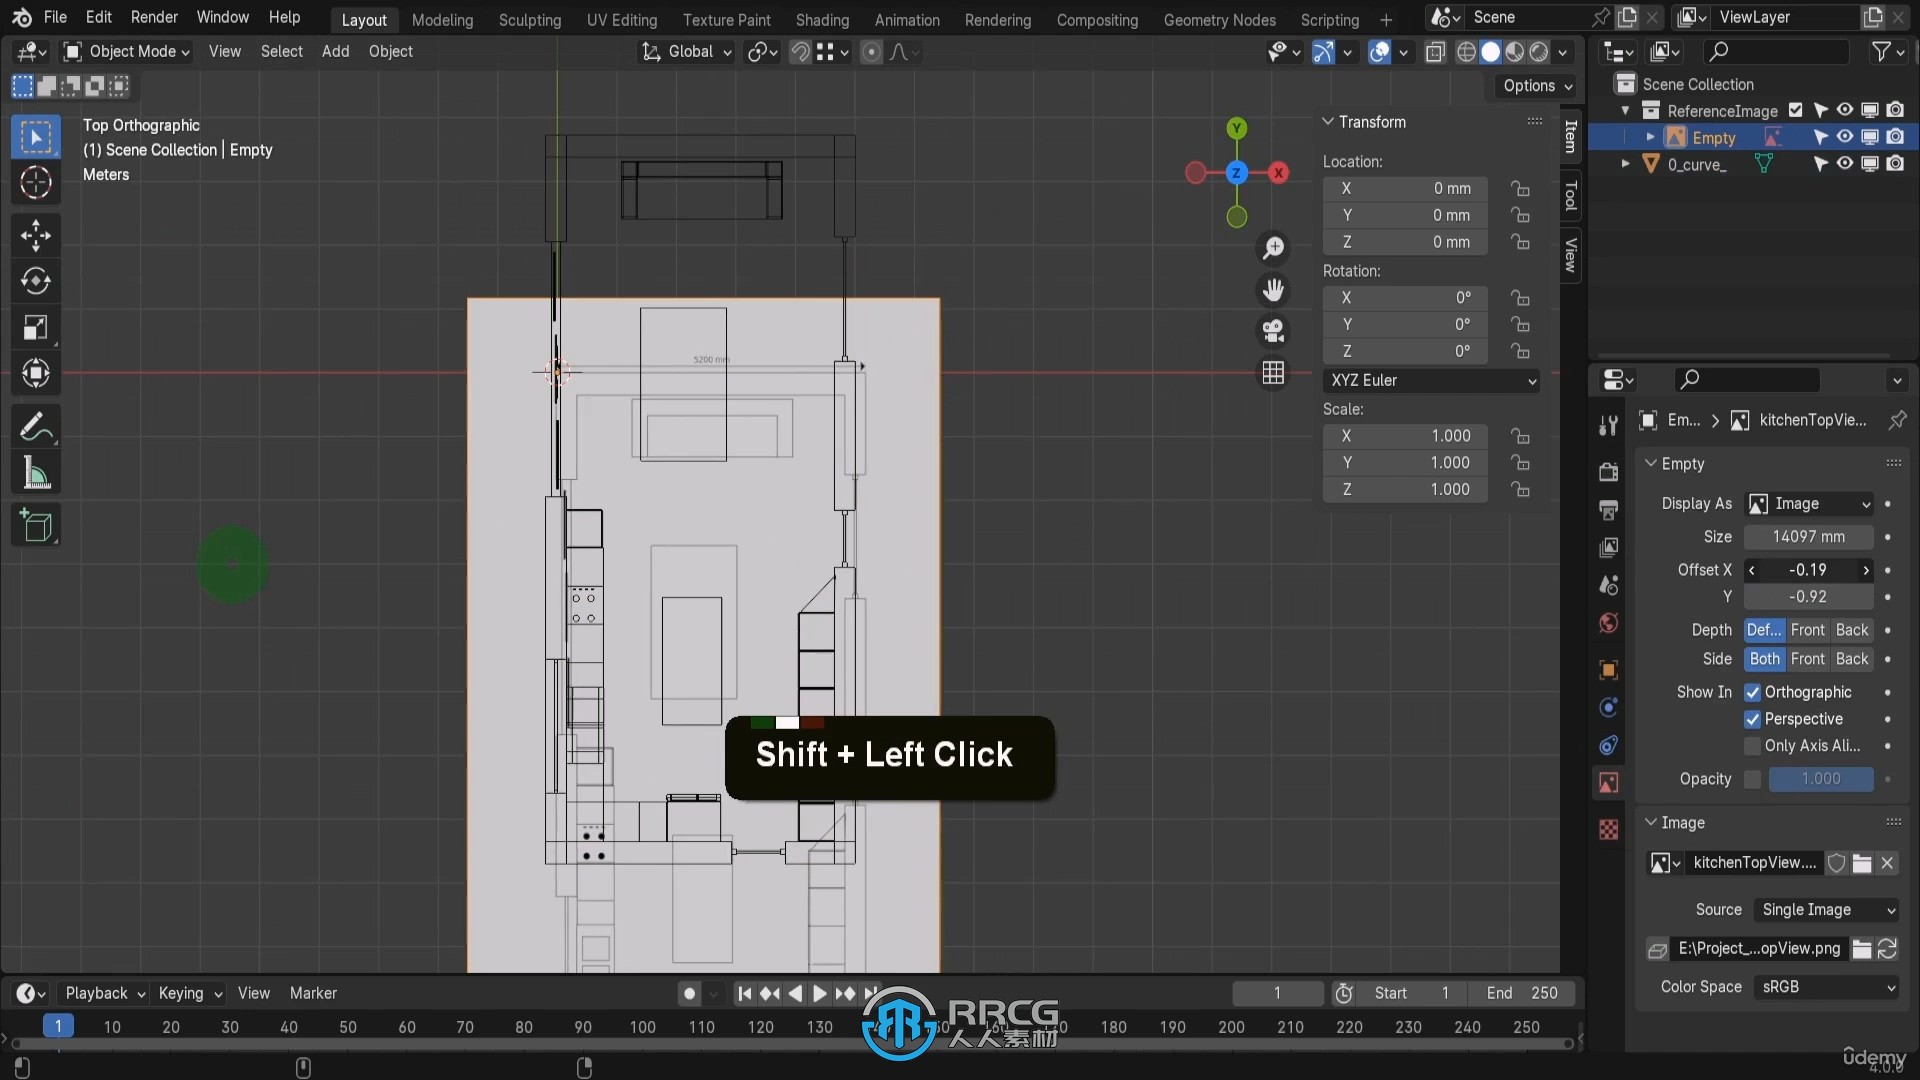 Blender 4现代建筑室内设计工作流程视频教程